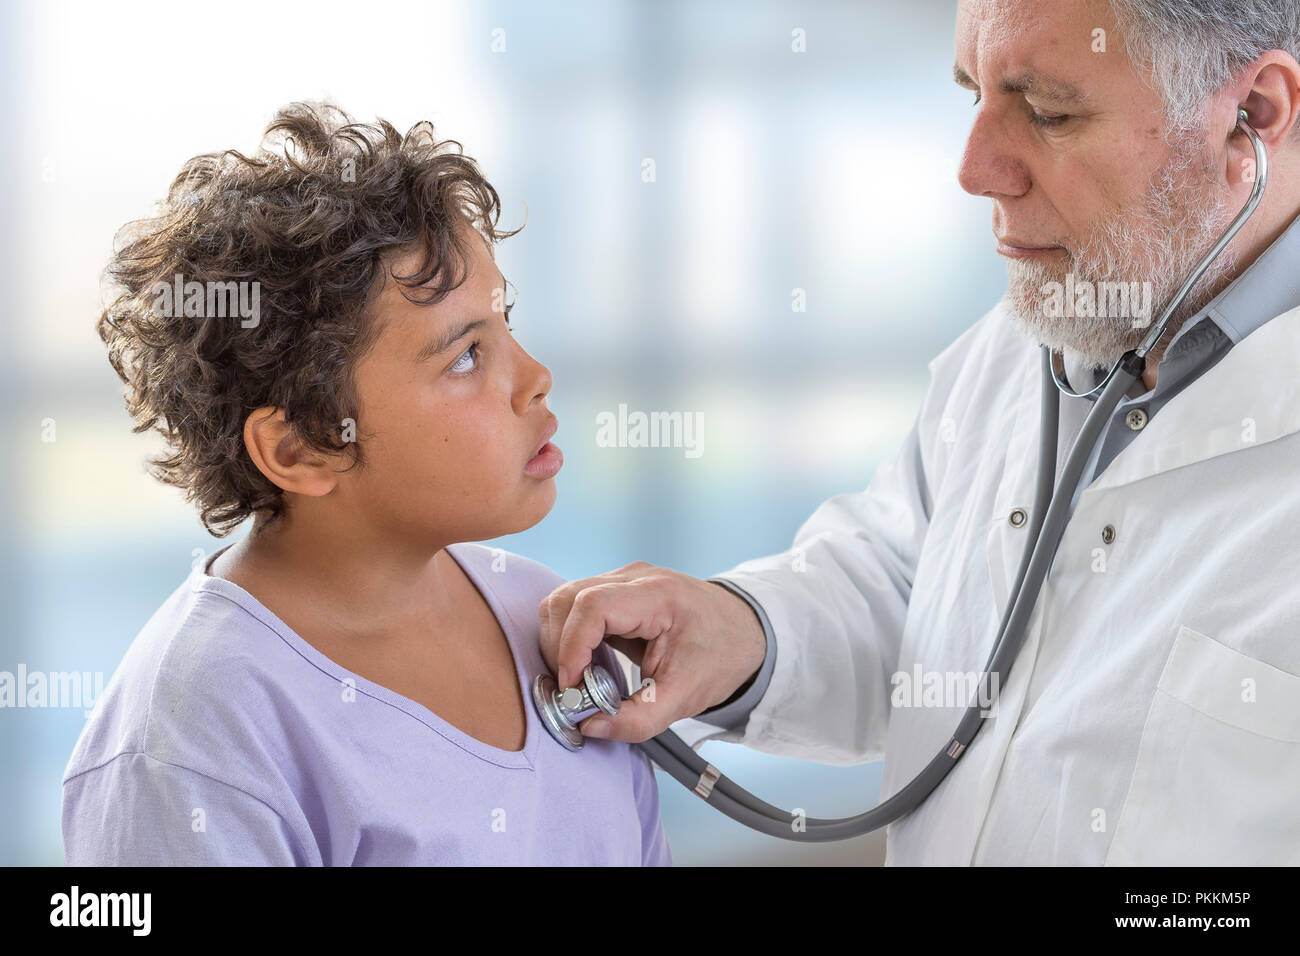 Giovani Teenage Check Up. Medico ascolta la frequenza cardiaca con uno stetoscopio Foto Stock